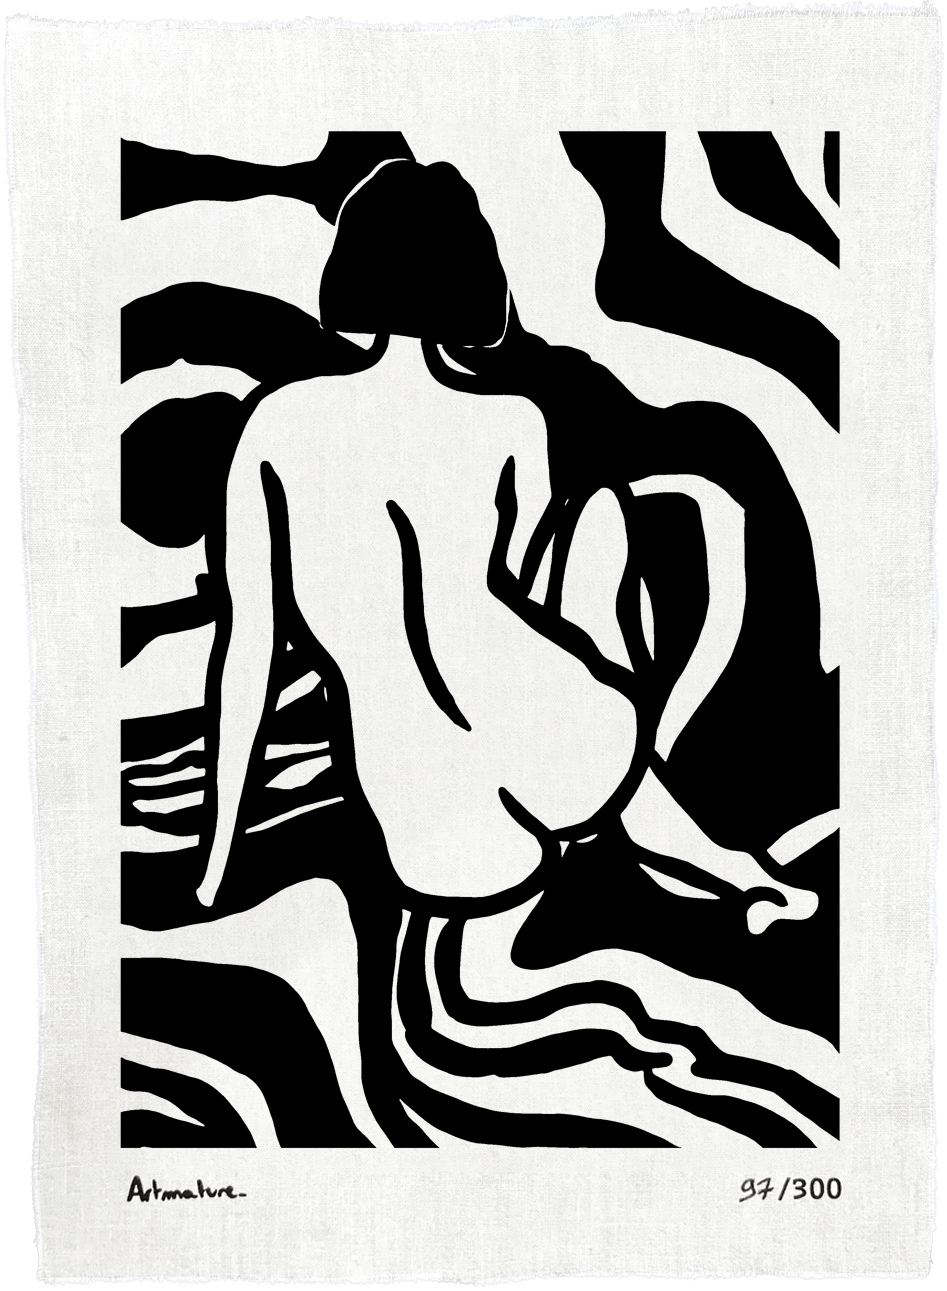 Oeuvre de Artmature, une artiste strasbourgeoise pour sa collaboration avec Bisart. Elle montre une femme nue de dos sur un fond blanc.